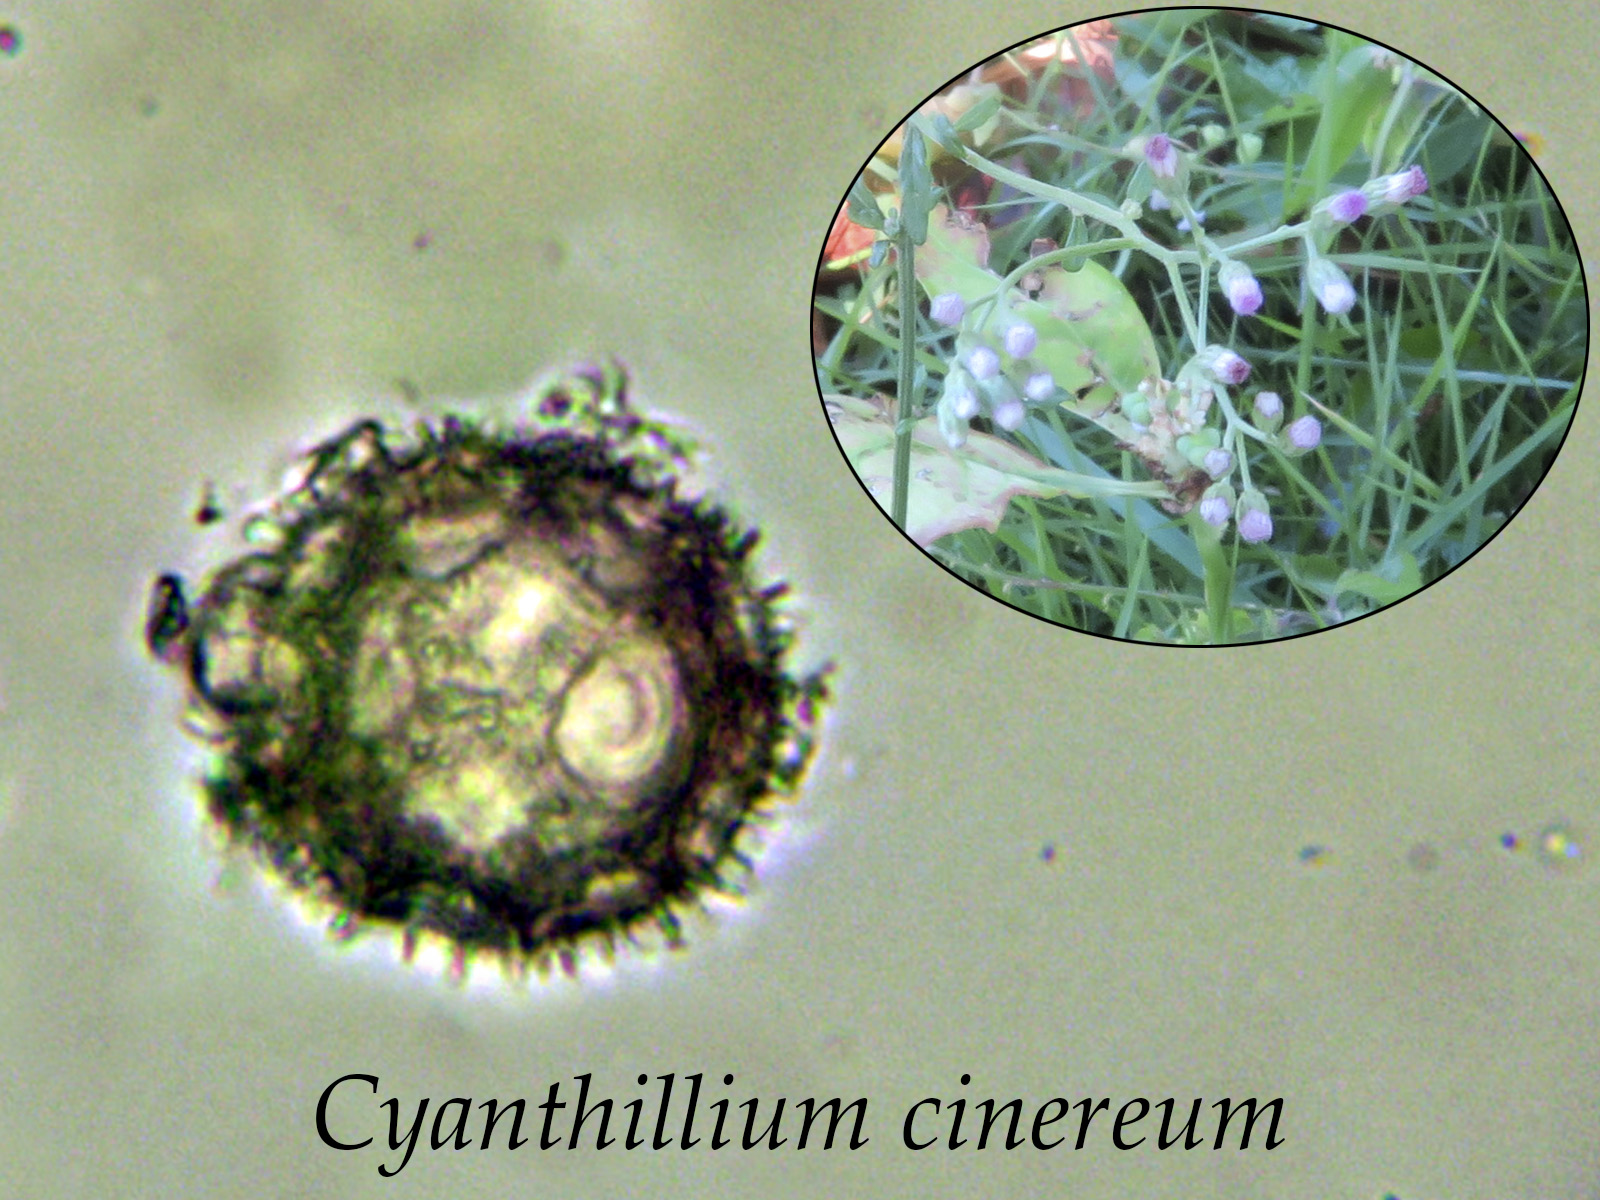 Cyanthilliumcinereum.jpg